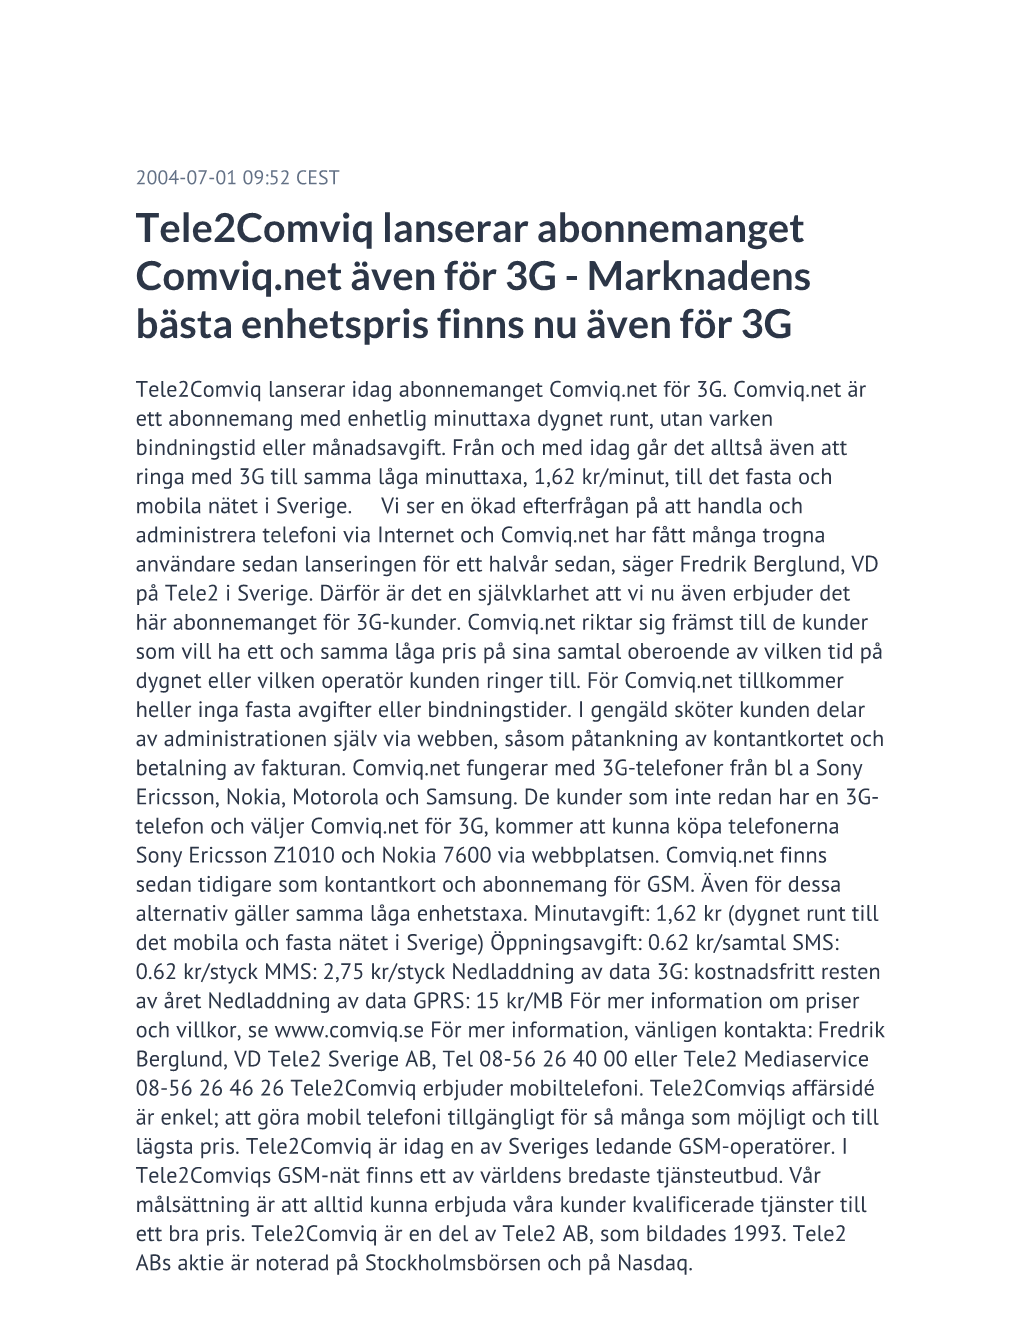 Tele2comviq Lanserar Abonnemanget Comviq.Net Även För 3G - Marknadens Bästa Enhetspris Finns Nu Även För 3G